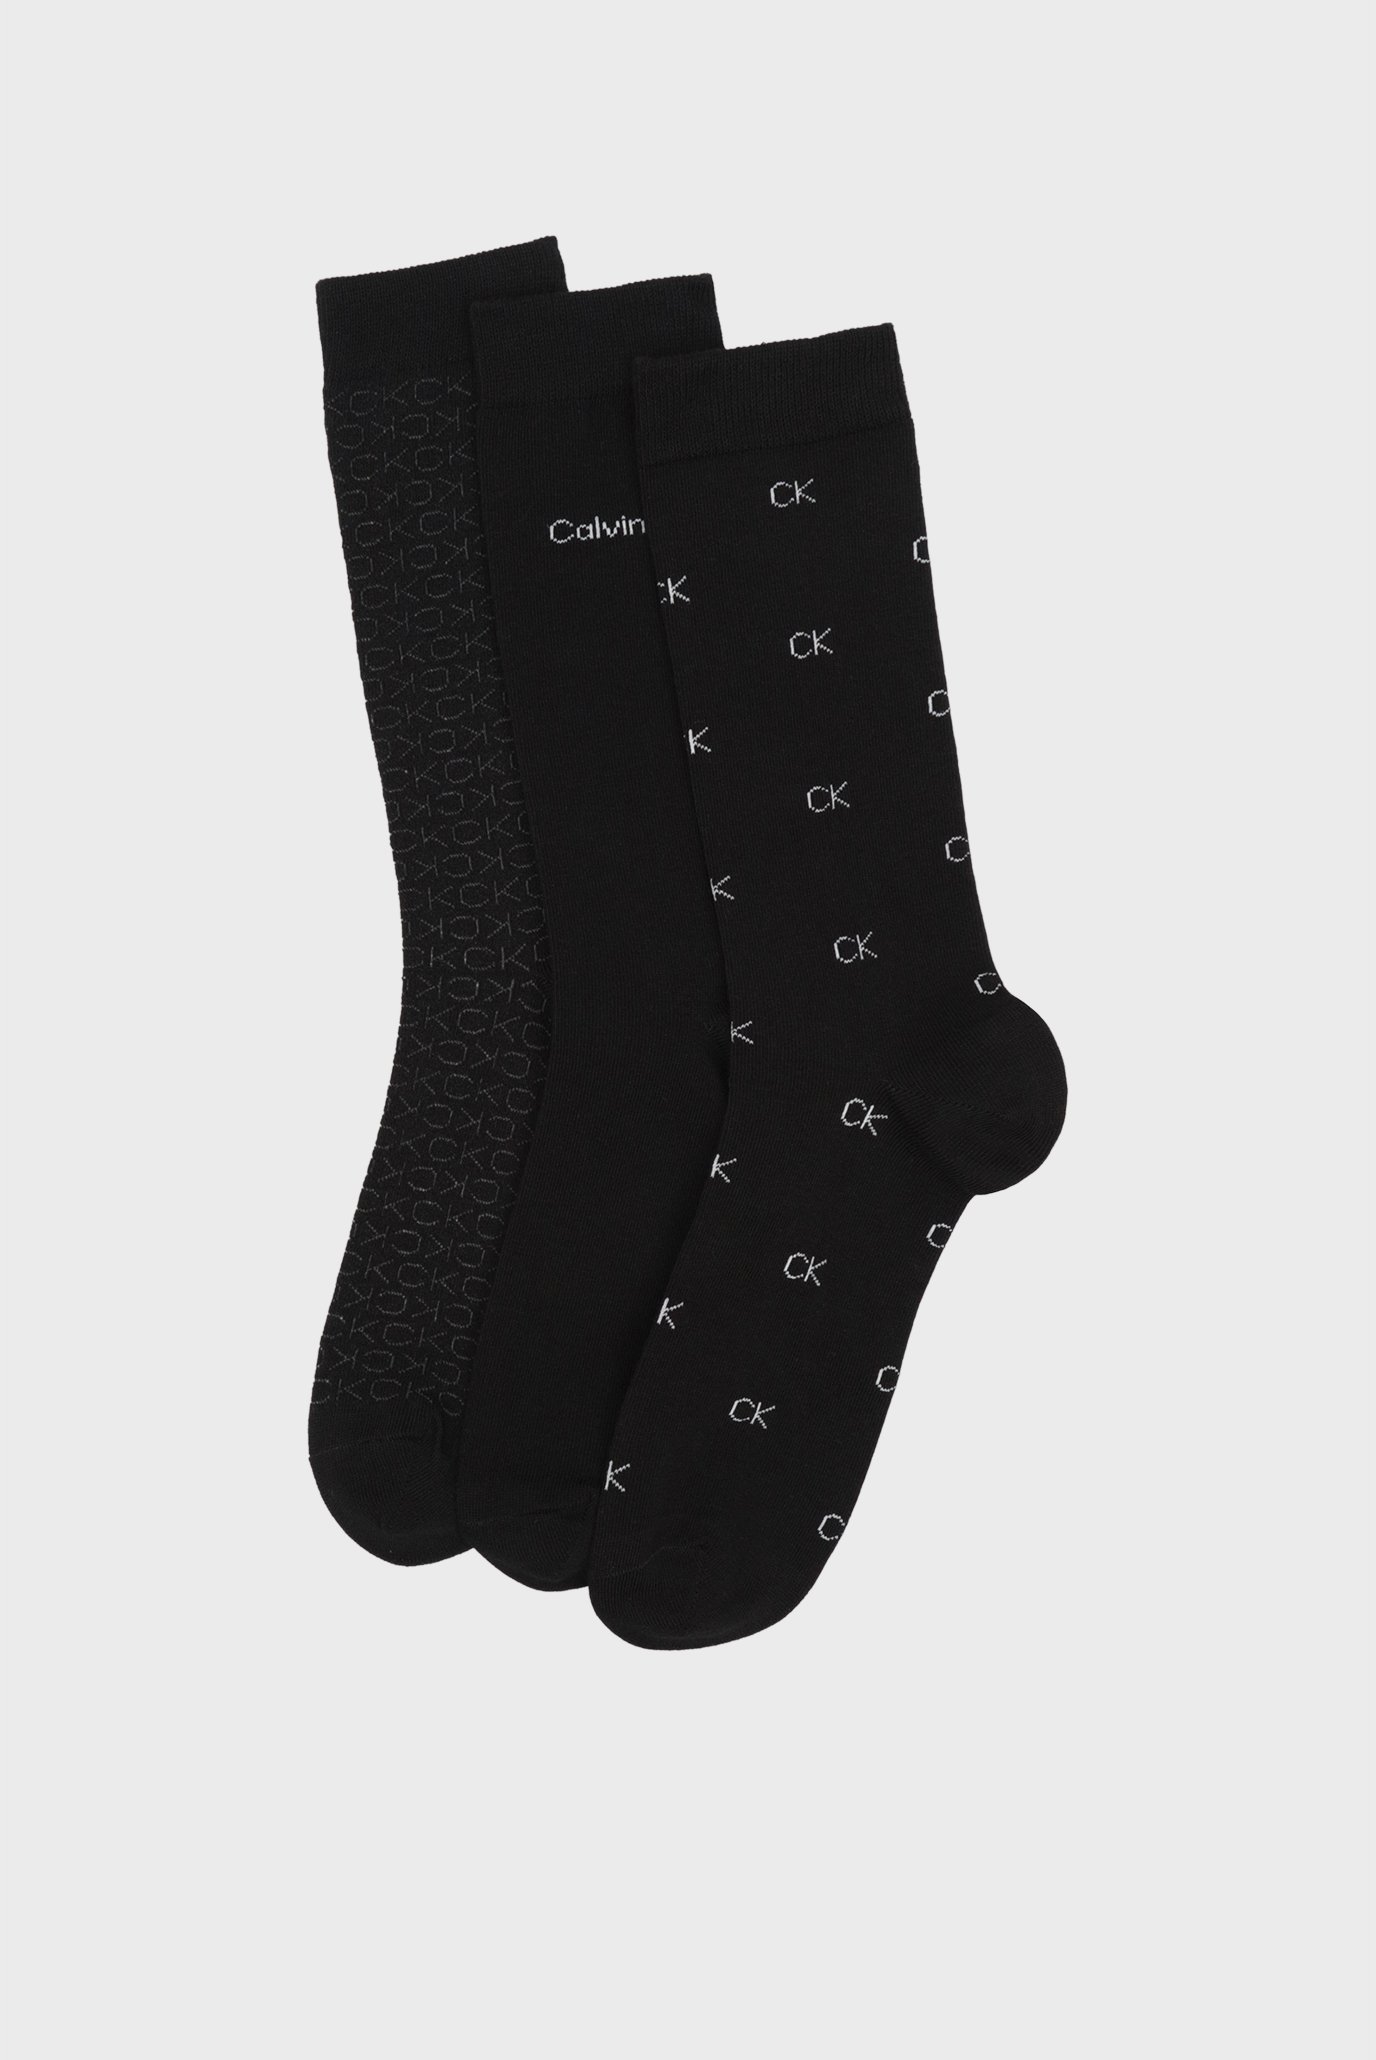 Мужские черные носки (3 пары) CK LOGO LUX CARDBOARD GIFTBOX 1